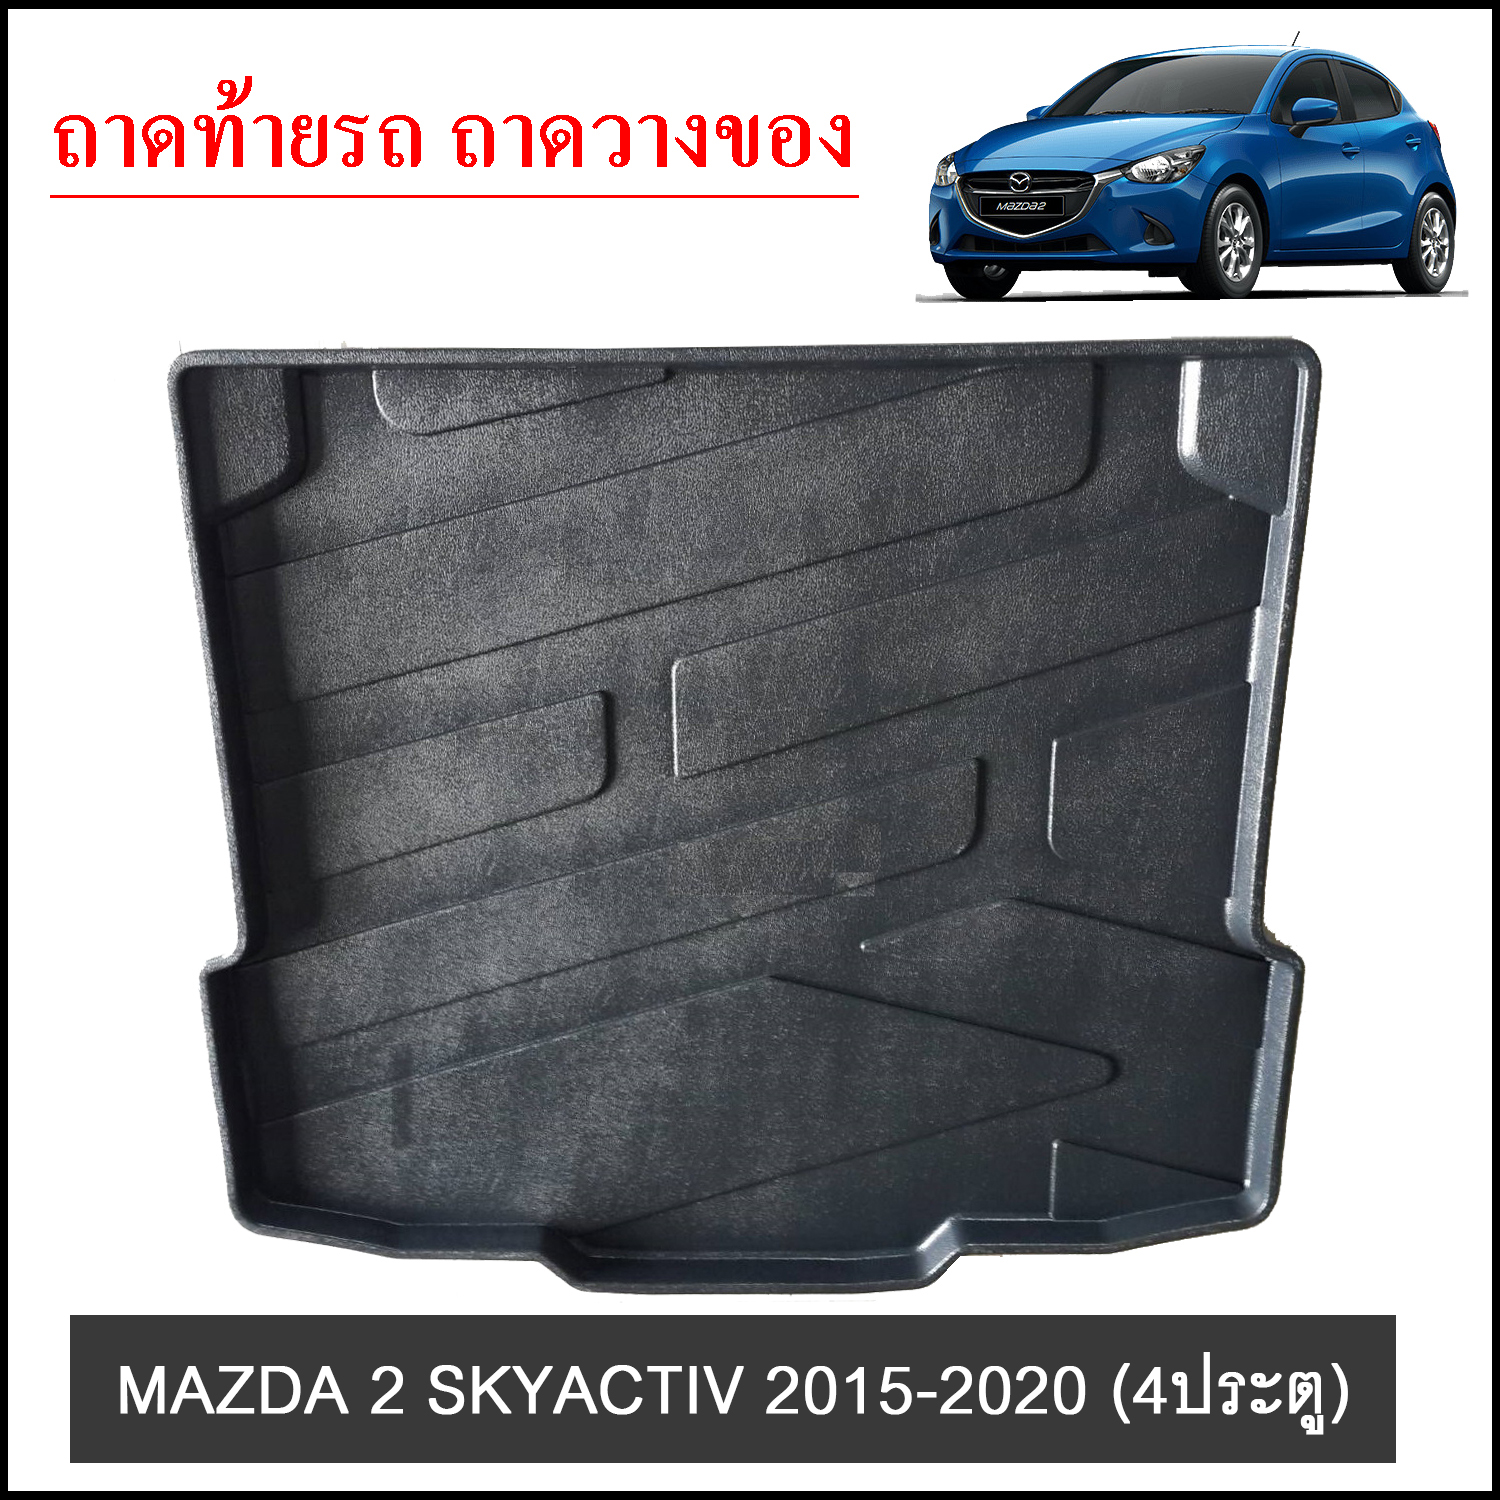 MAZDA 2 Skyactiv 2015-2020